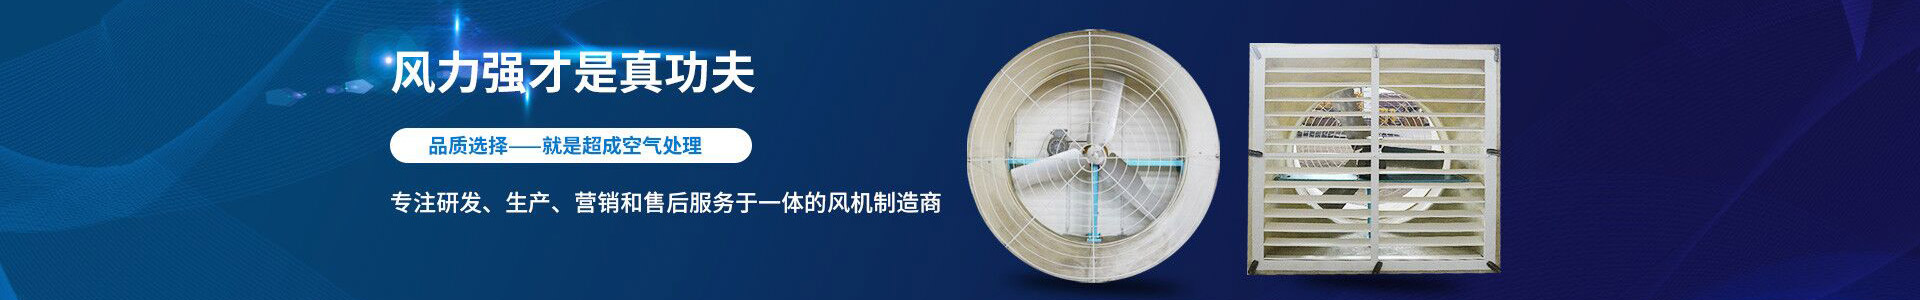 铝合金边框湿帘-江阴市超成空气处理设备有限公司